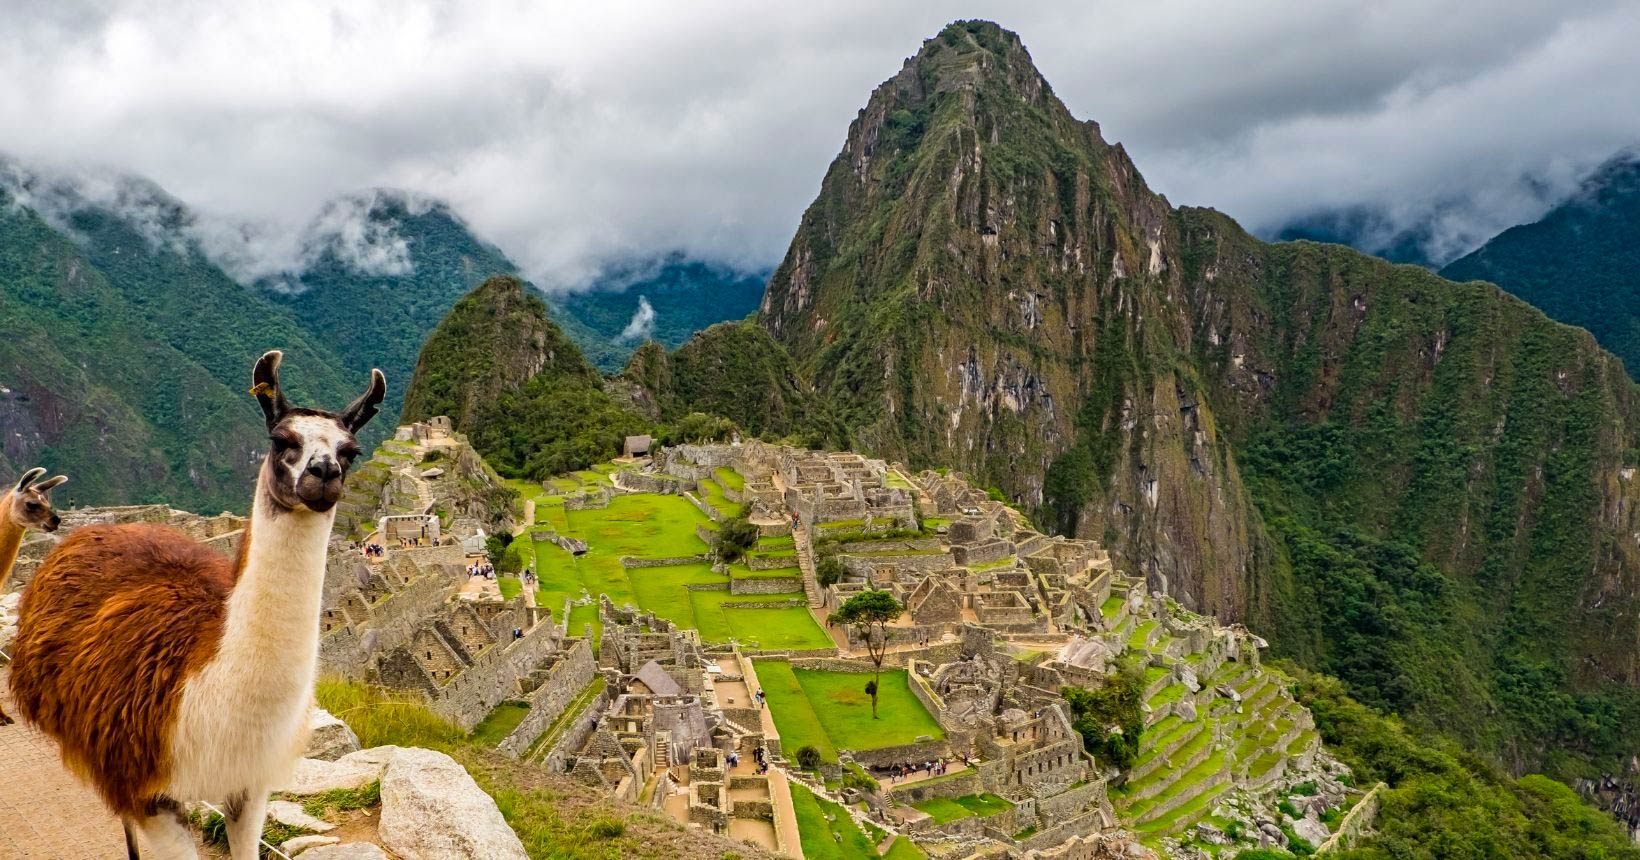 Partiu Peru! Passagens aéreas baratas para Lima ou Cusco a partir de R$ 1.227